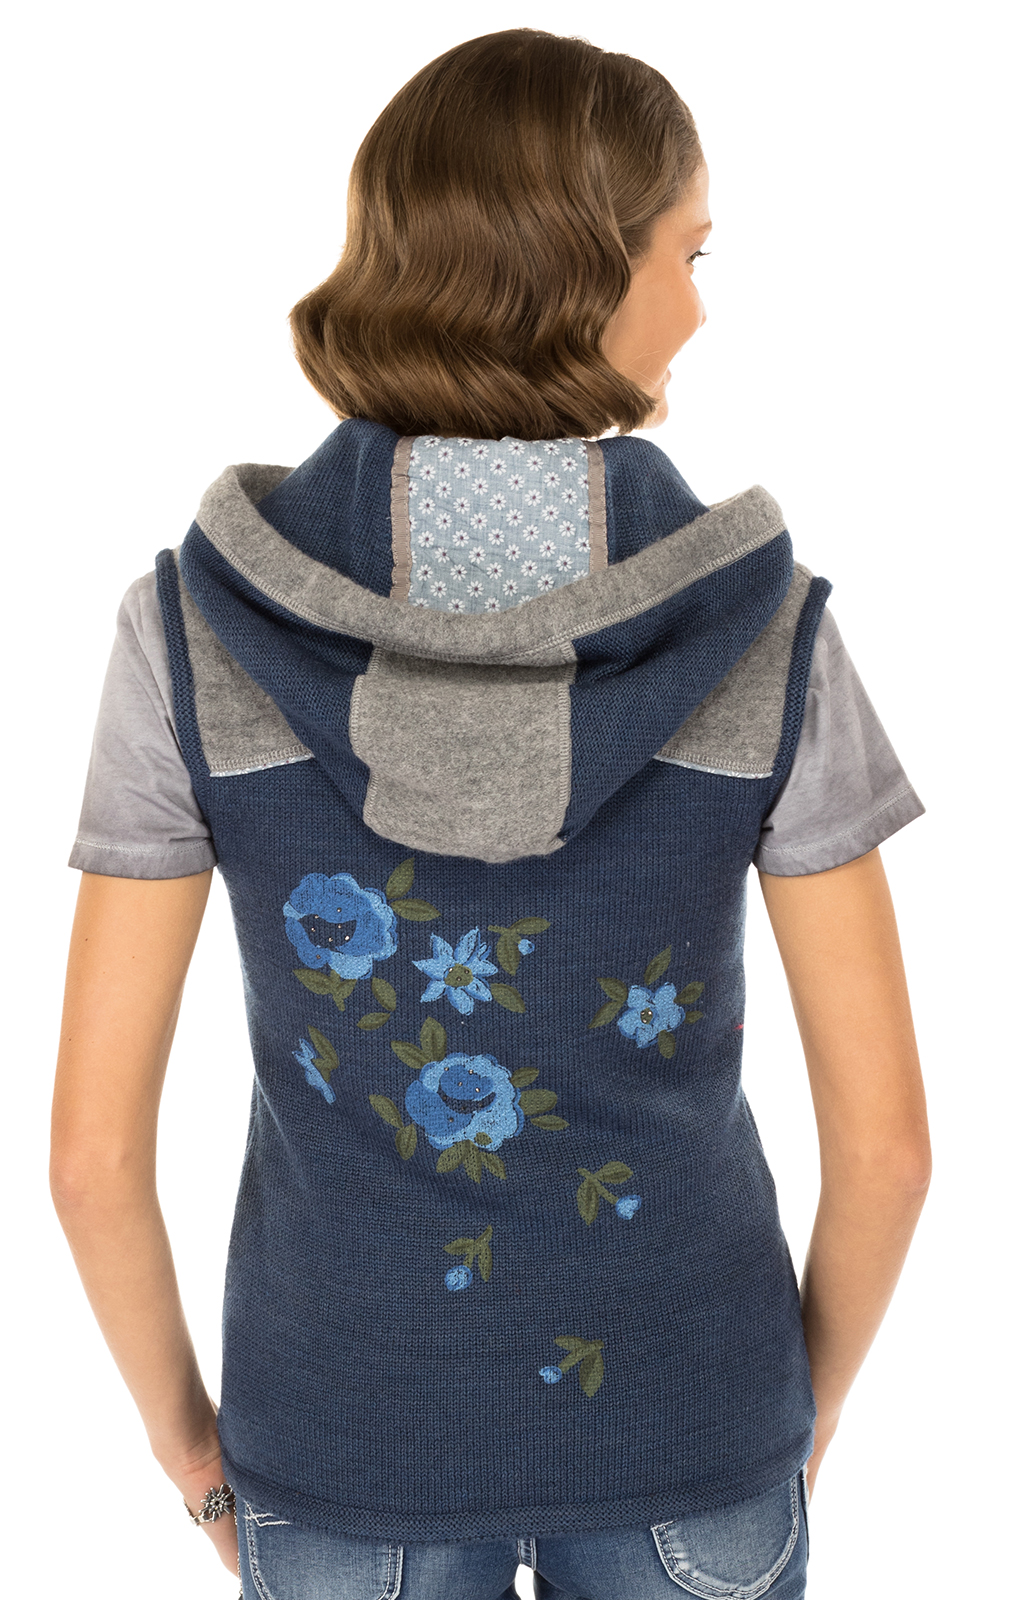 weitere Bilder von Knitted vest blue